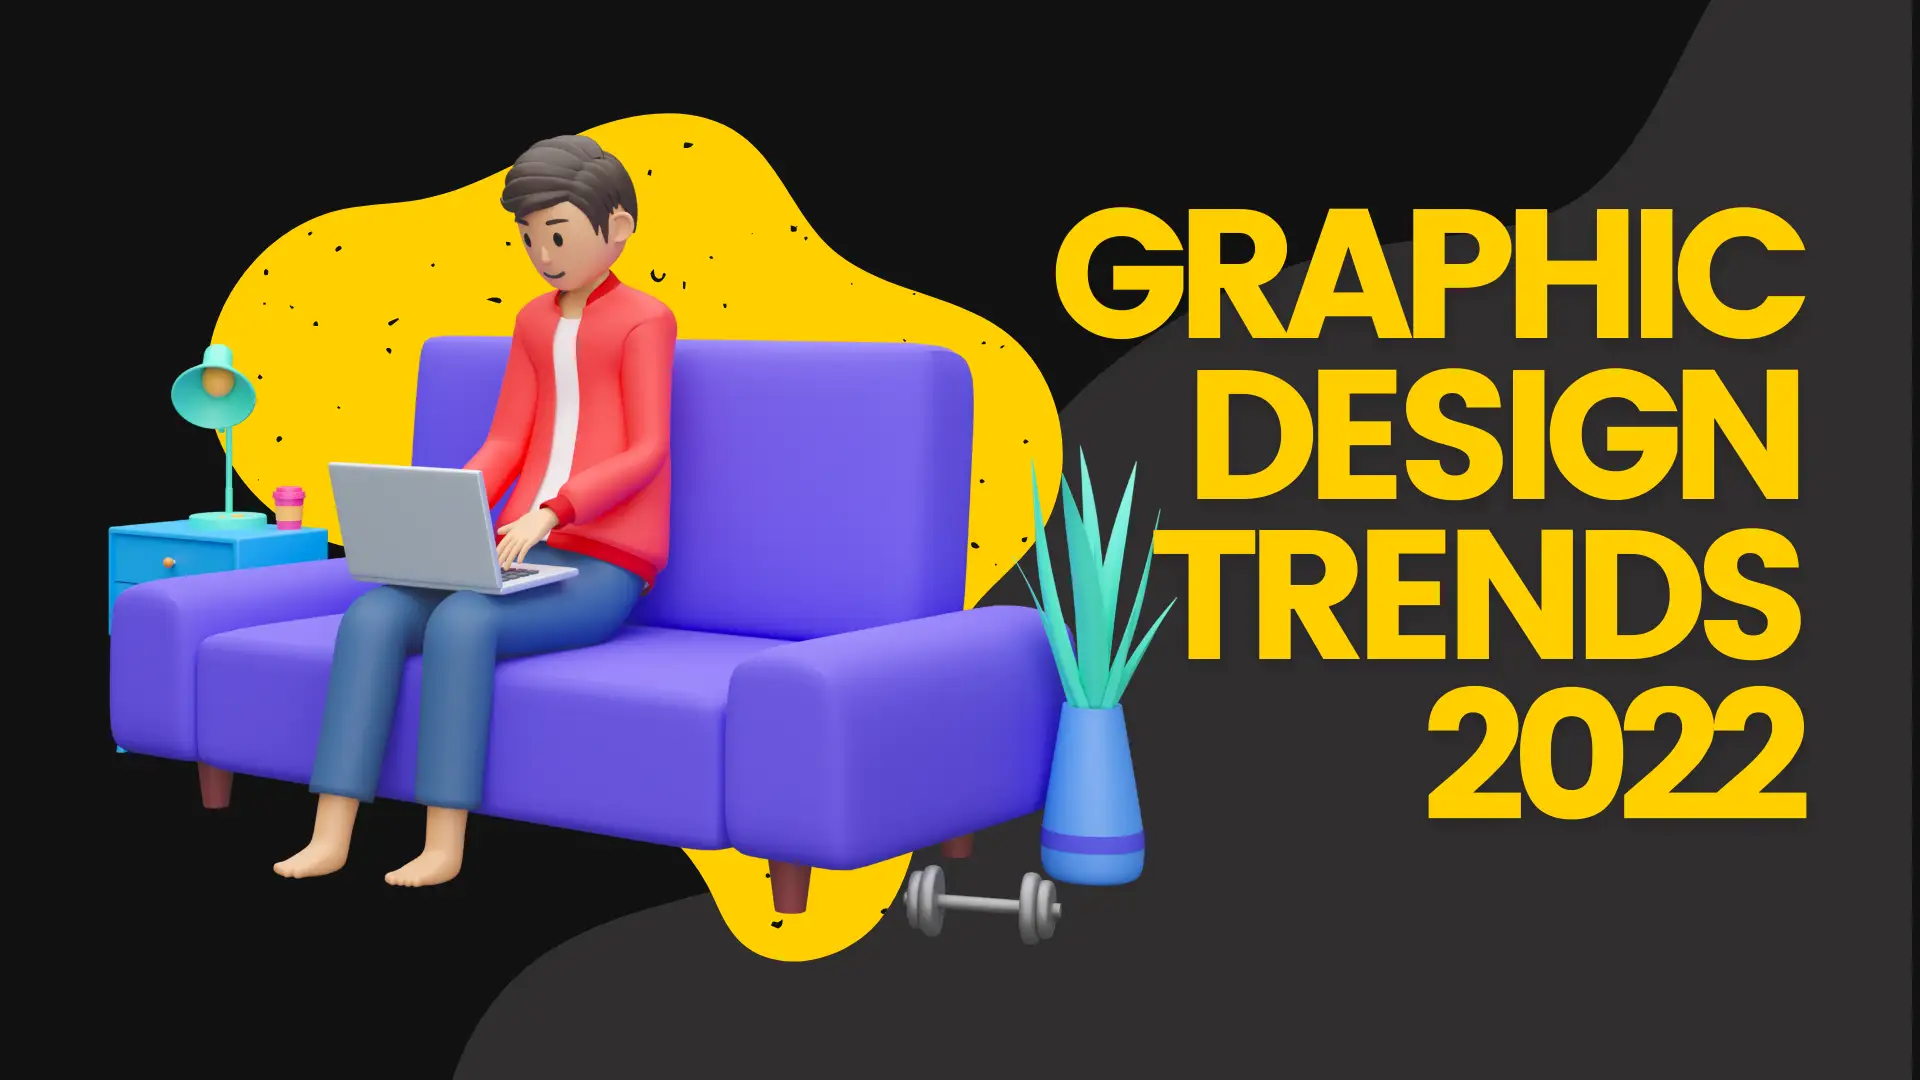 Graphic Design trends 2022